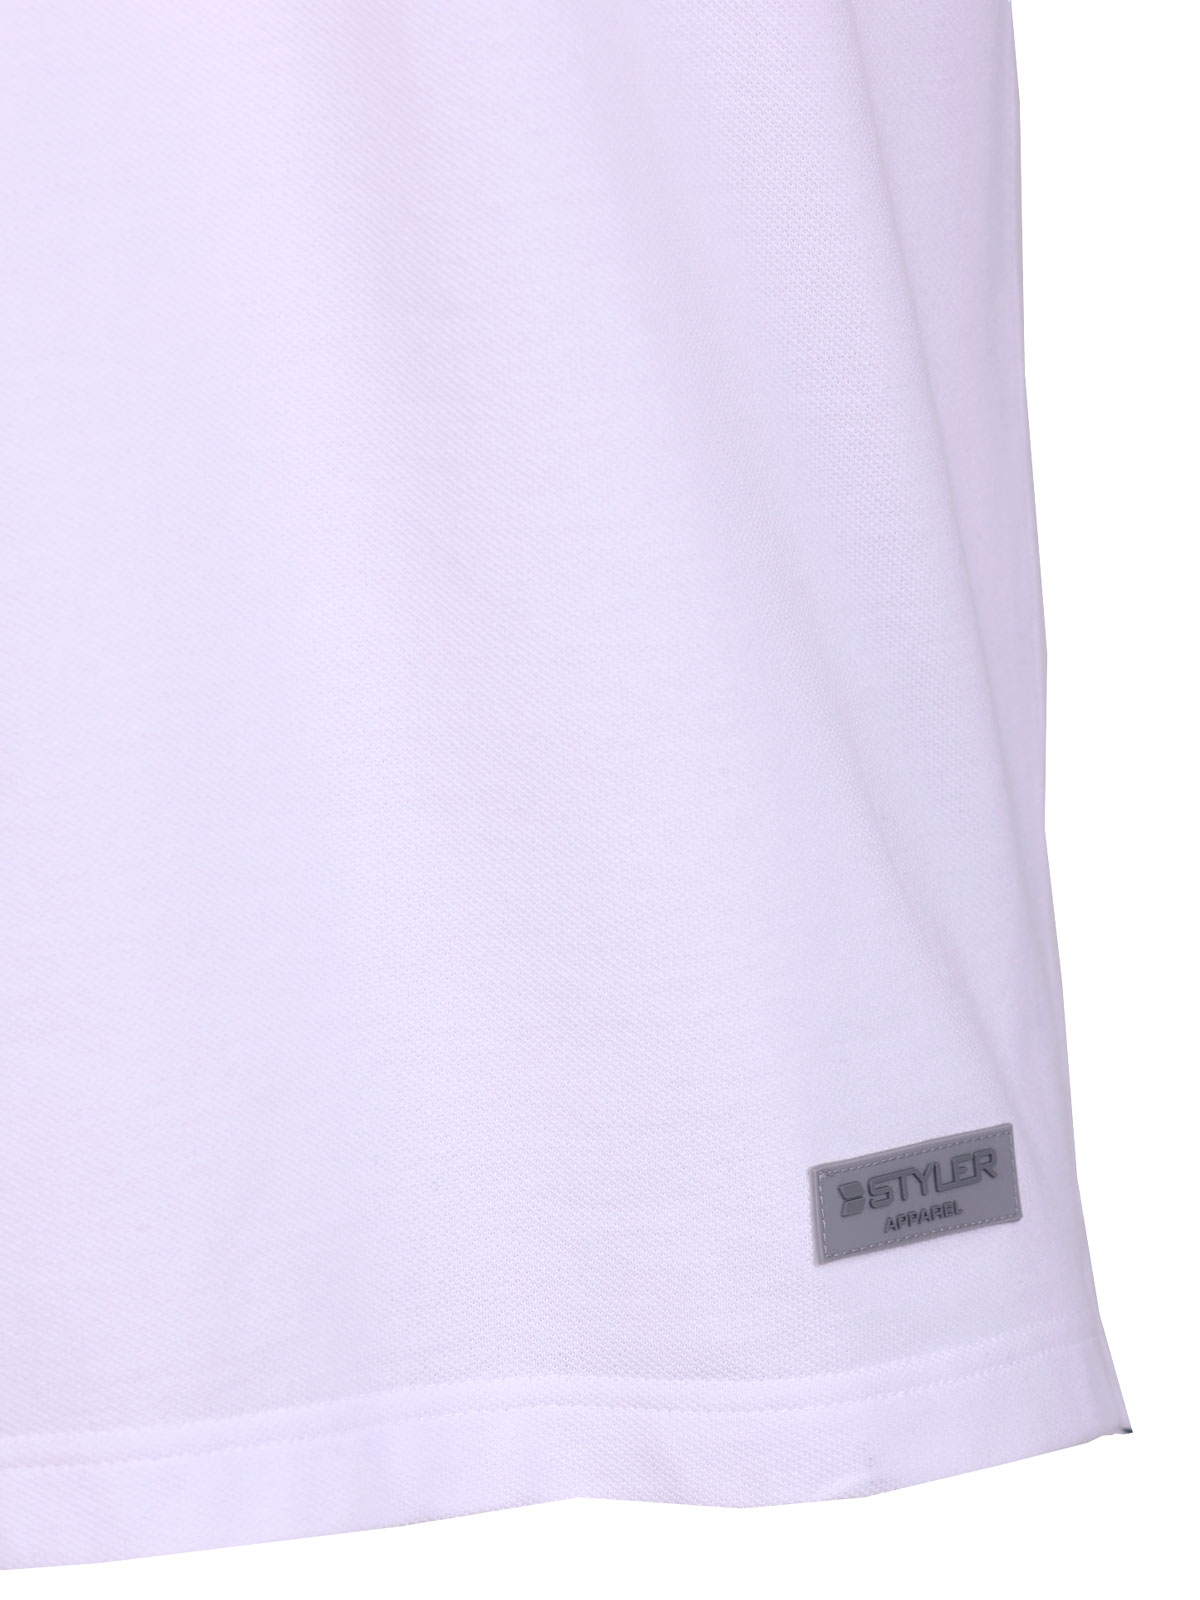 Λευκή μπλούζα με κοντό μανίκι - 93439 € 40.49 img3